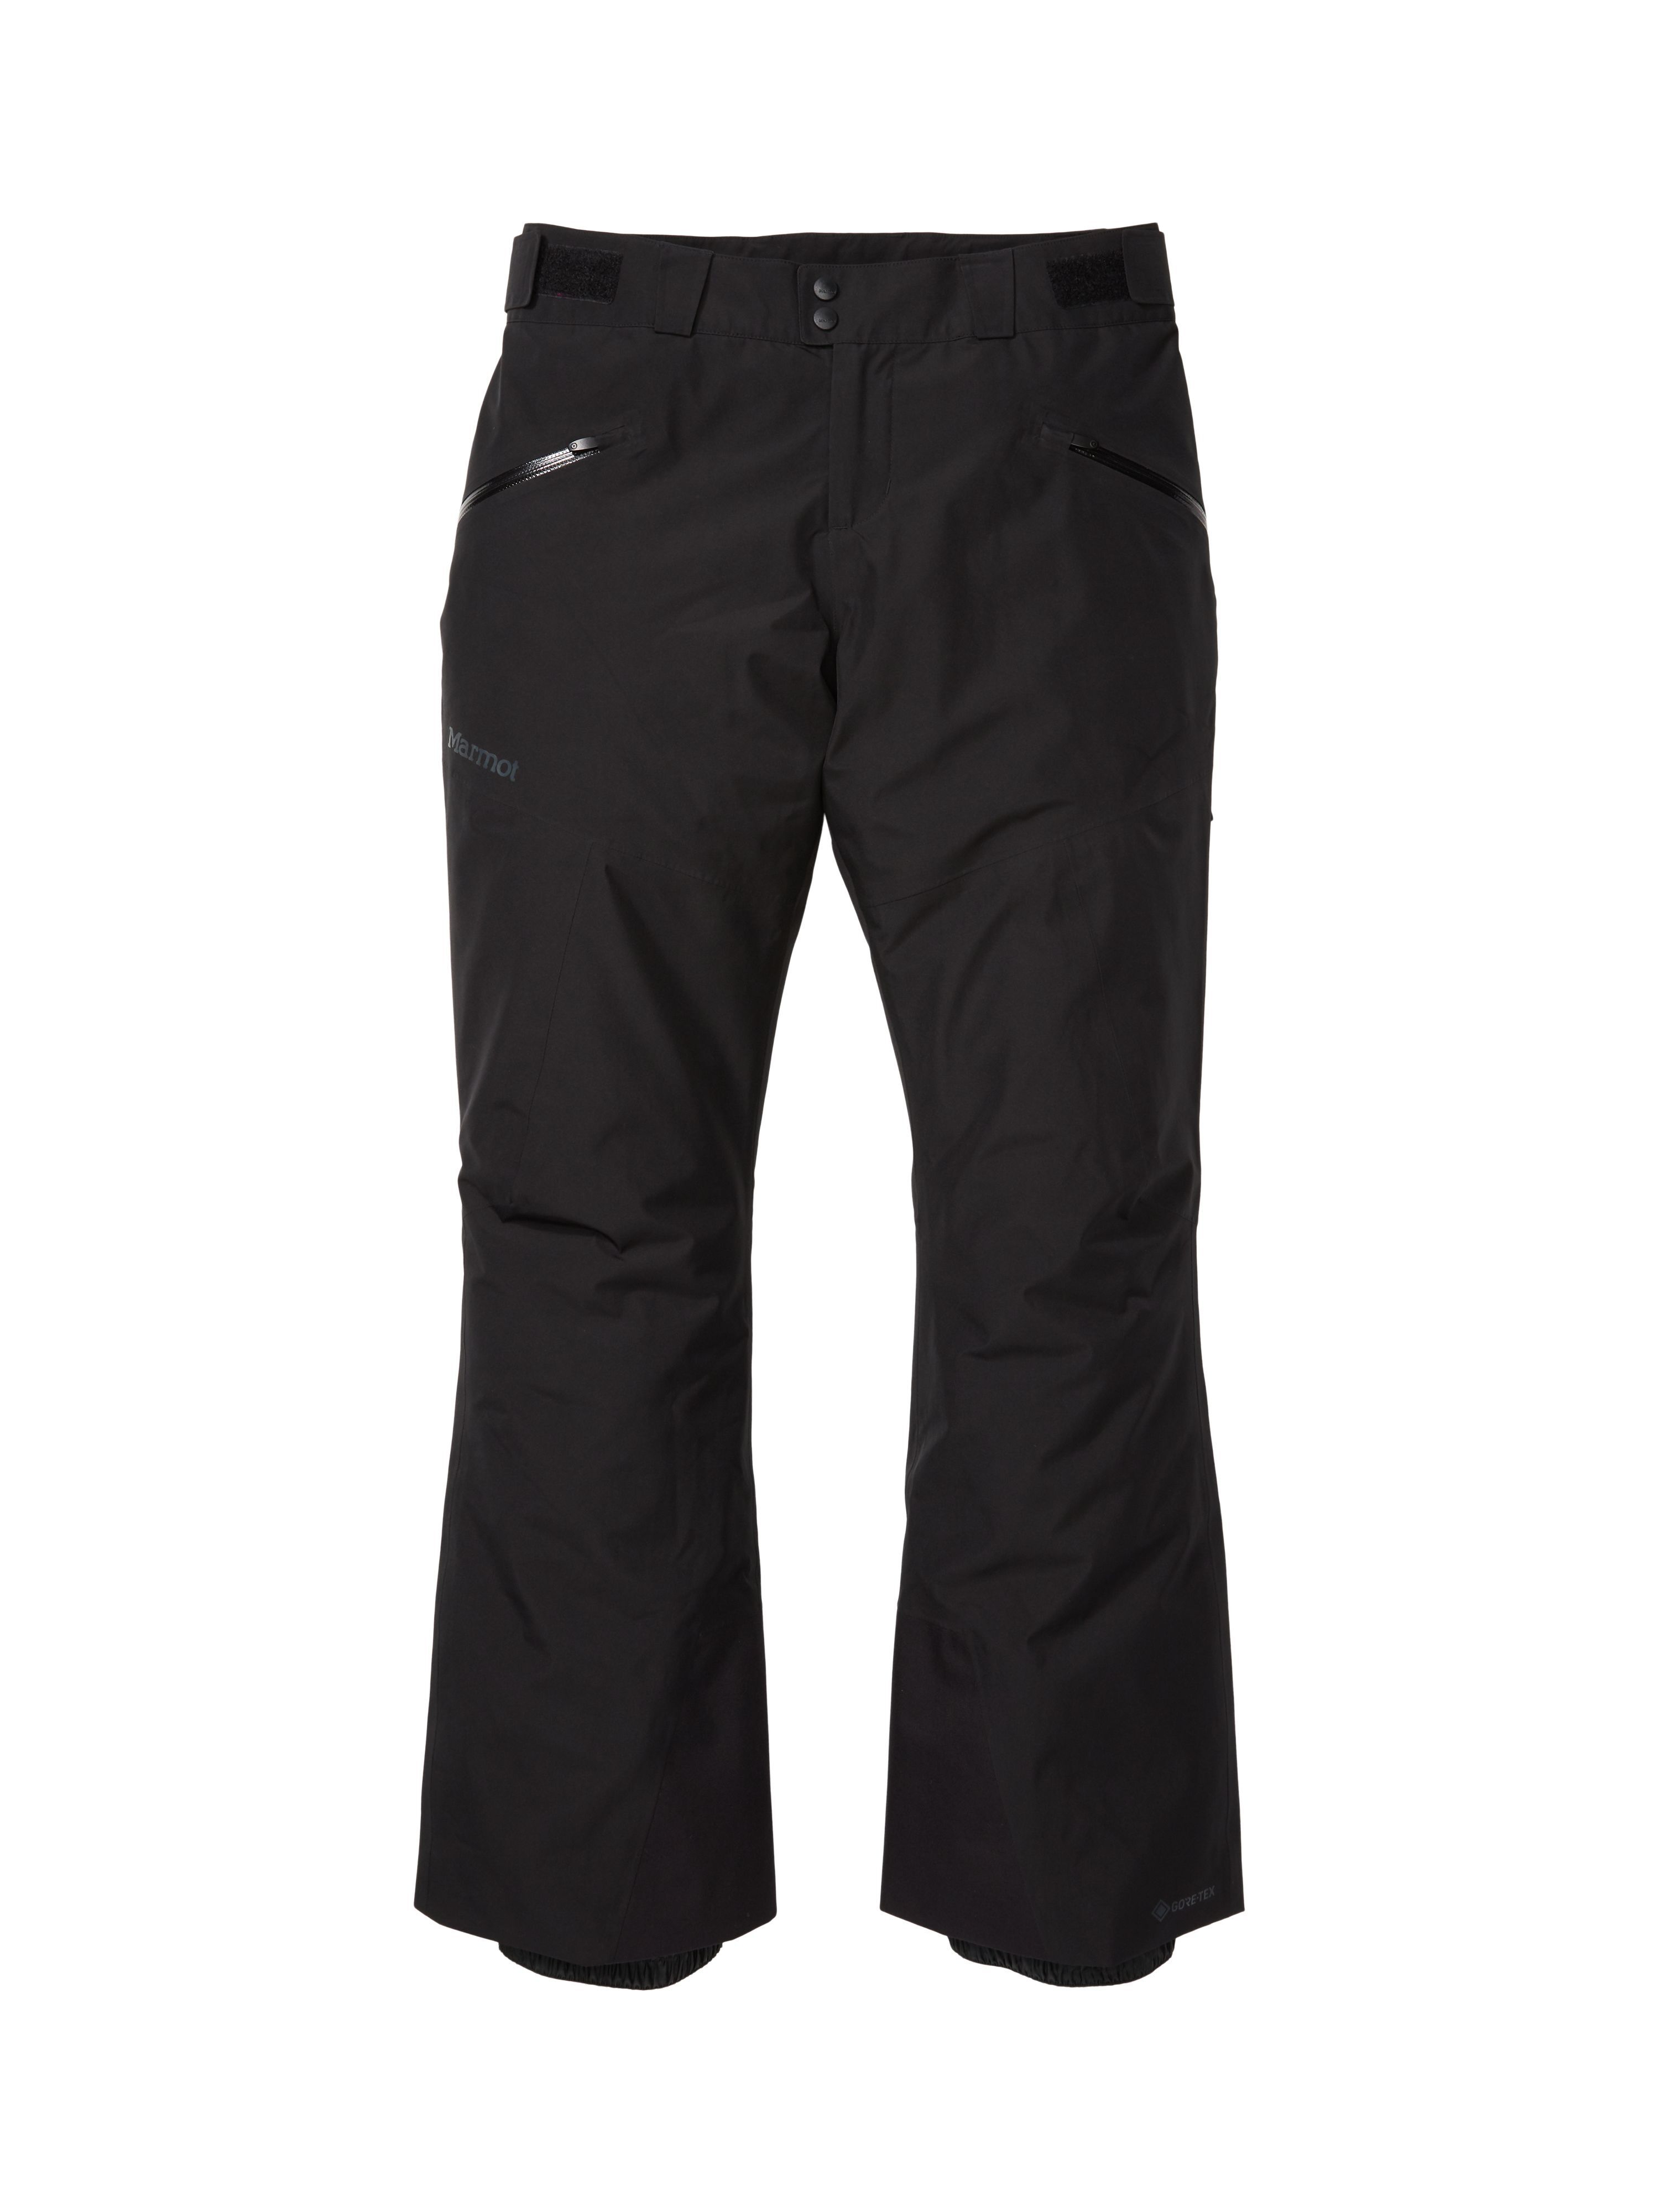 Marmot Lightray Pant - Ski pants - Women's